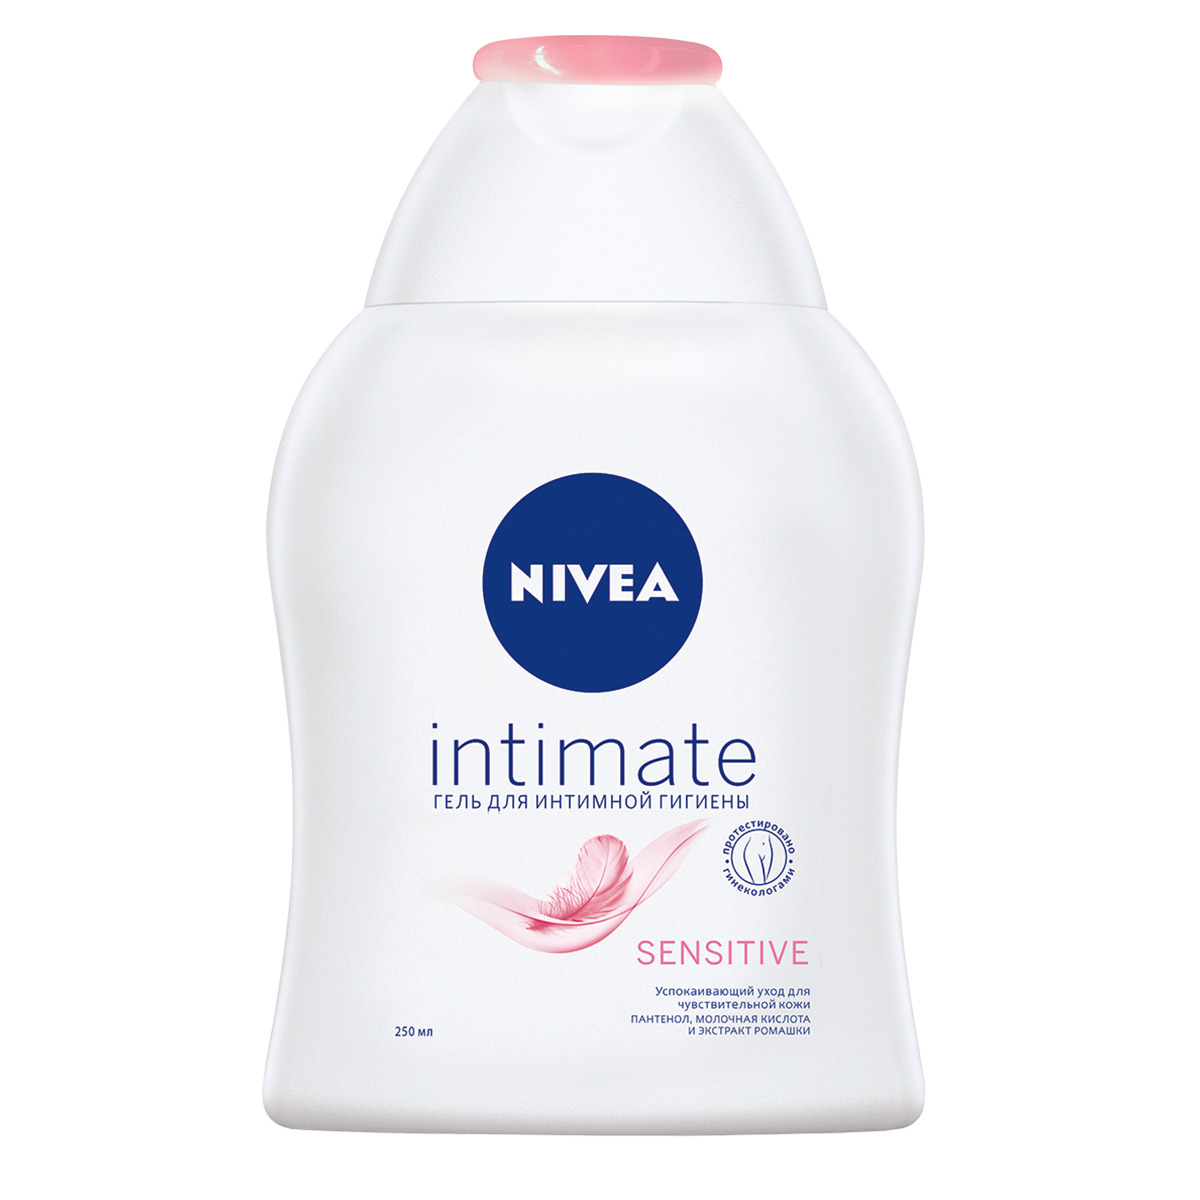 NIVEA гель для интимной гигиены Sensitive, 250 мл